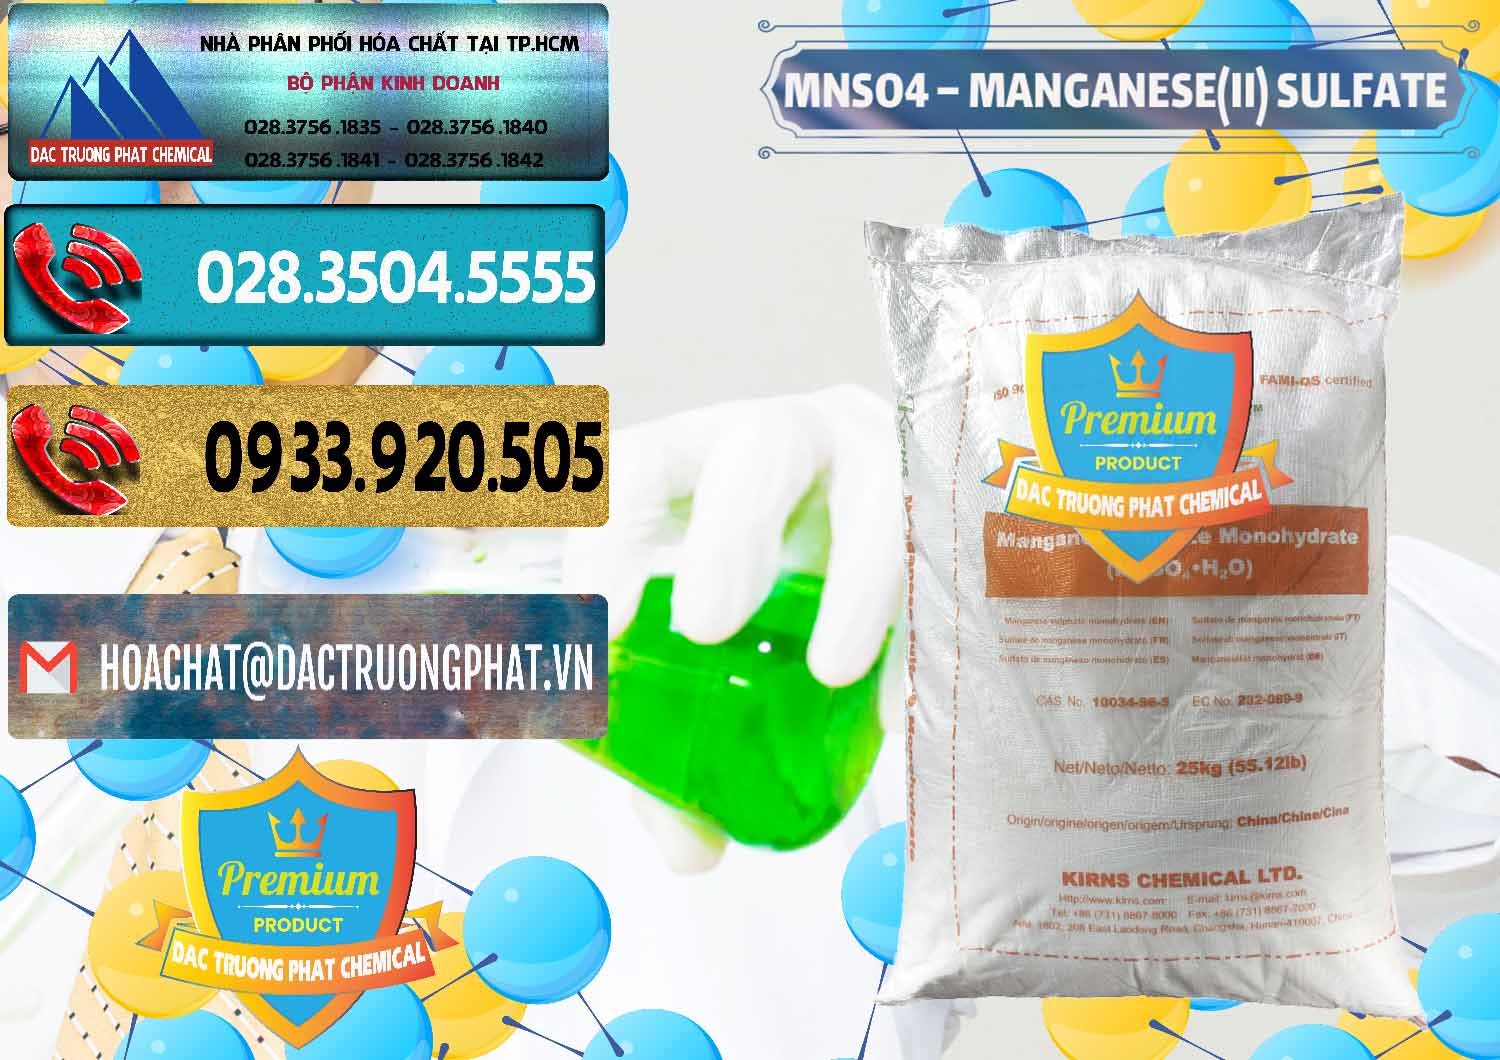 Chuyên bán và cung ứng MNSO4 – Manganese (II) Sulfate Kirns Trung Quốc China - 0095 - Đơn vị cung cấp _ kinh doanh hóa chất tại TP.HCM - hoachatdetnhuom.com